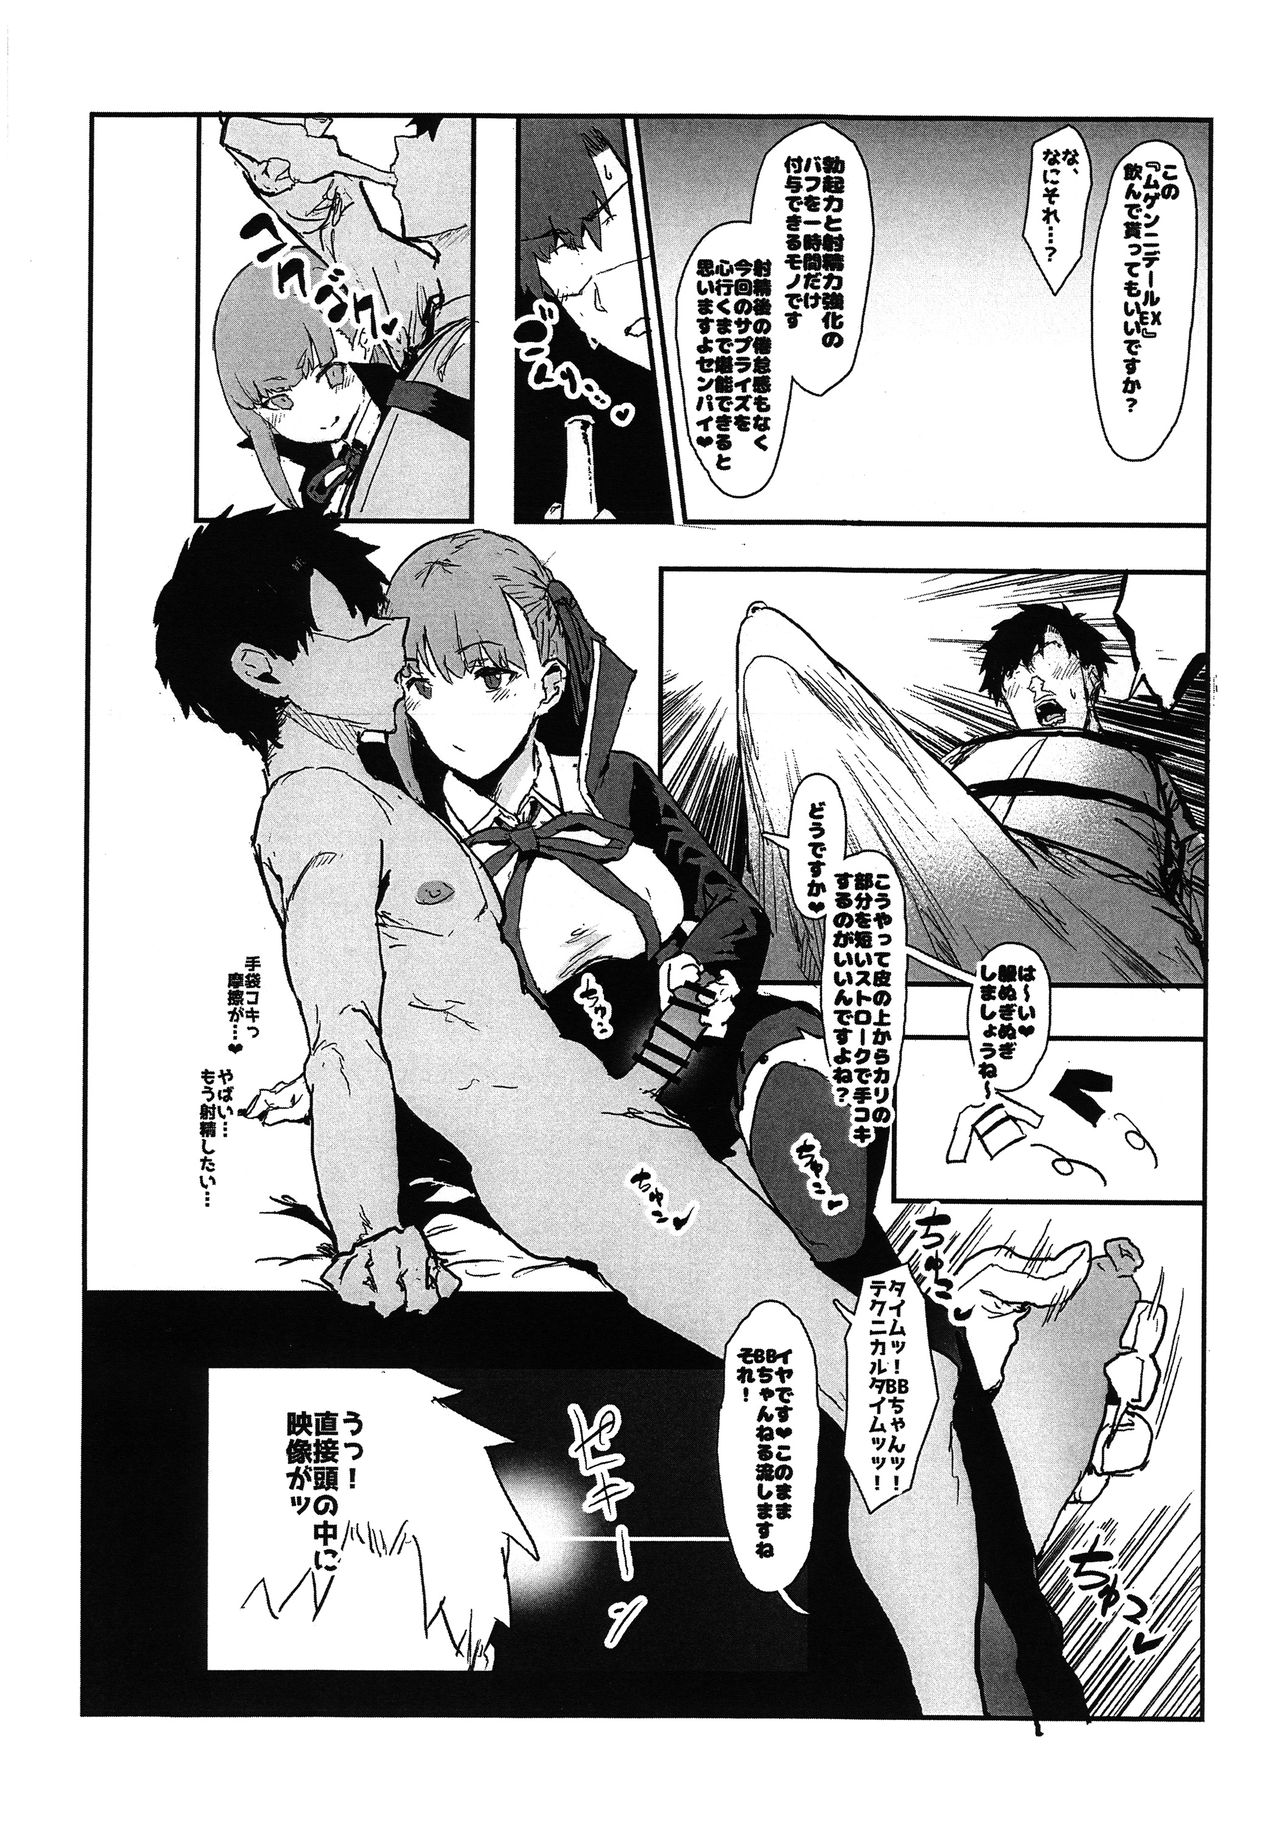 (COMIC1☆15) [んほぉおおおぉおおおおおお♥おっ♥おっ♥ (おおさわらさだお)] BBちゃんの寝取らせ映像を見ながらオナサポしてもらう本 (Fate/Grand Order)